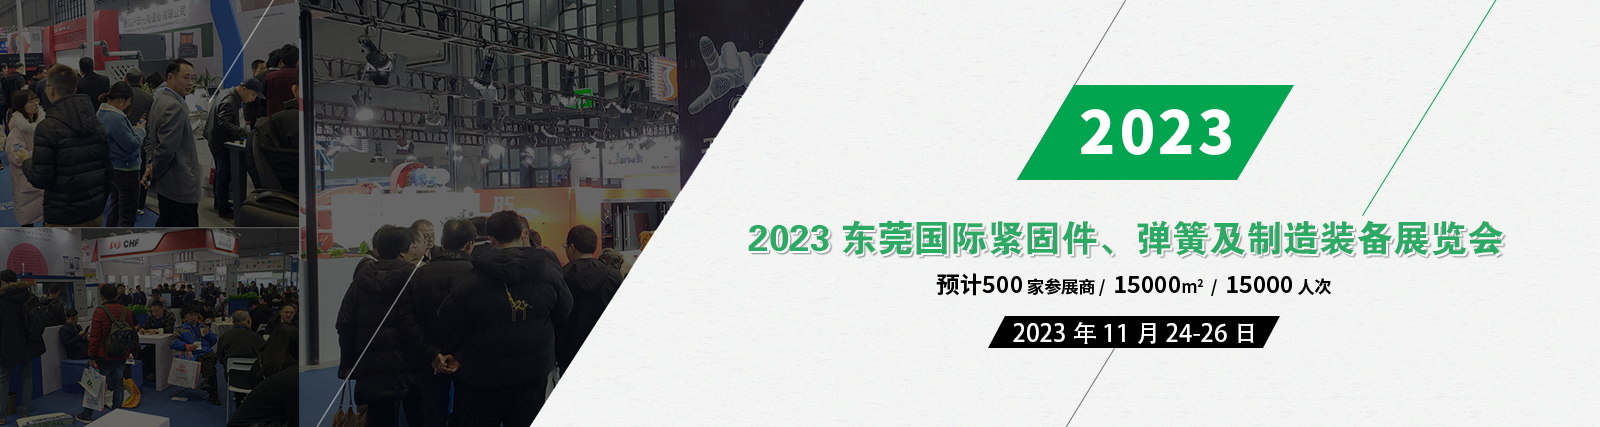 2023东莞国际紧固件、弹簧及制造装备展览会